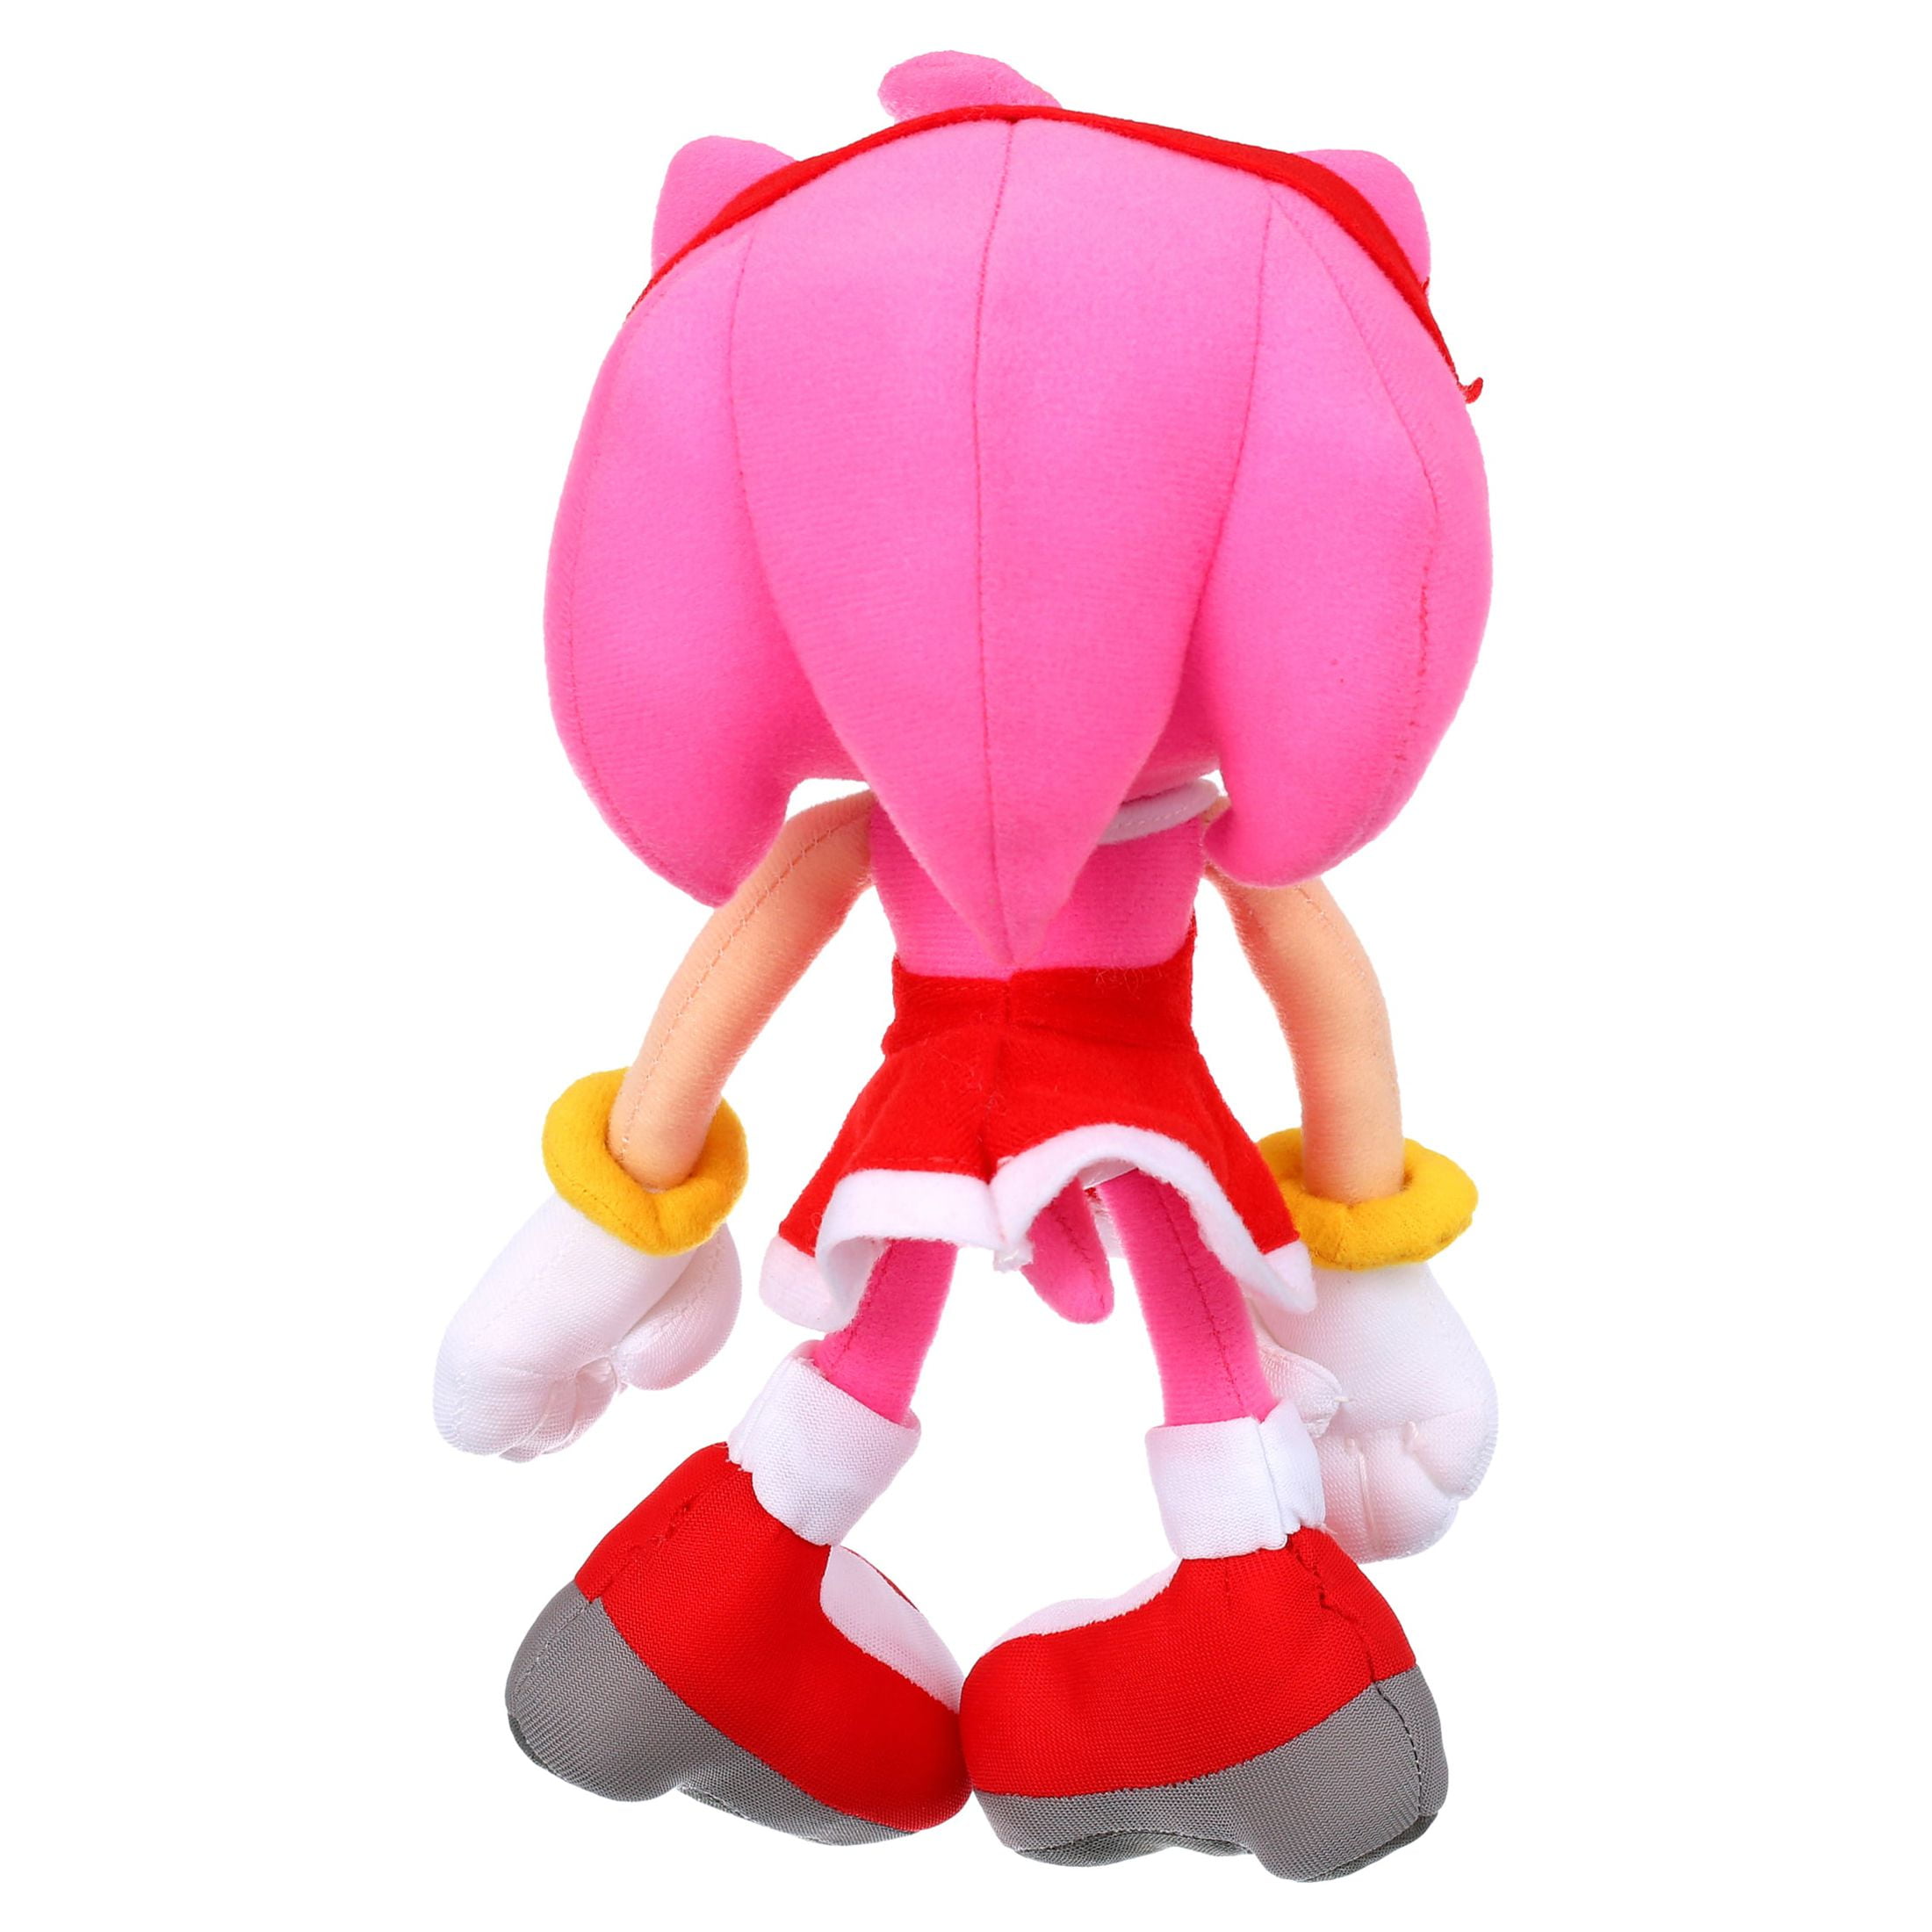 Pelúcia Recheada Sonic The Hedgehog Amy Rose 9' Vermelho com Vestido -  Great Eastern Entertainment - Pelúcia - Magazine Luiza